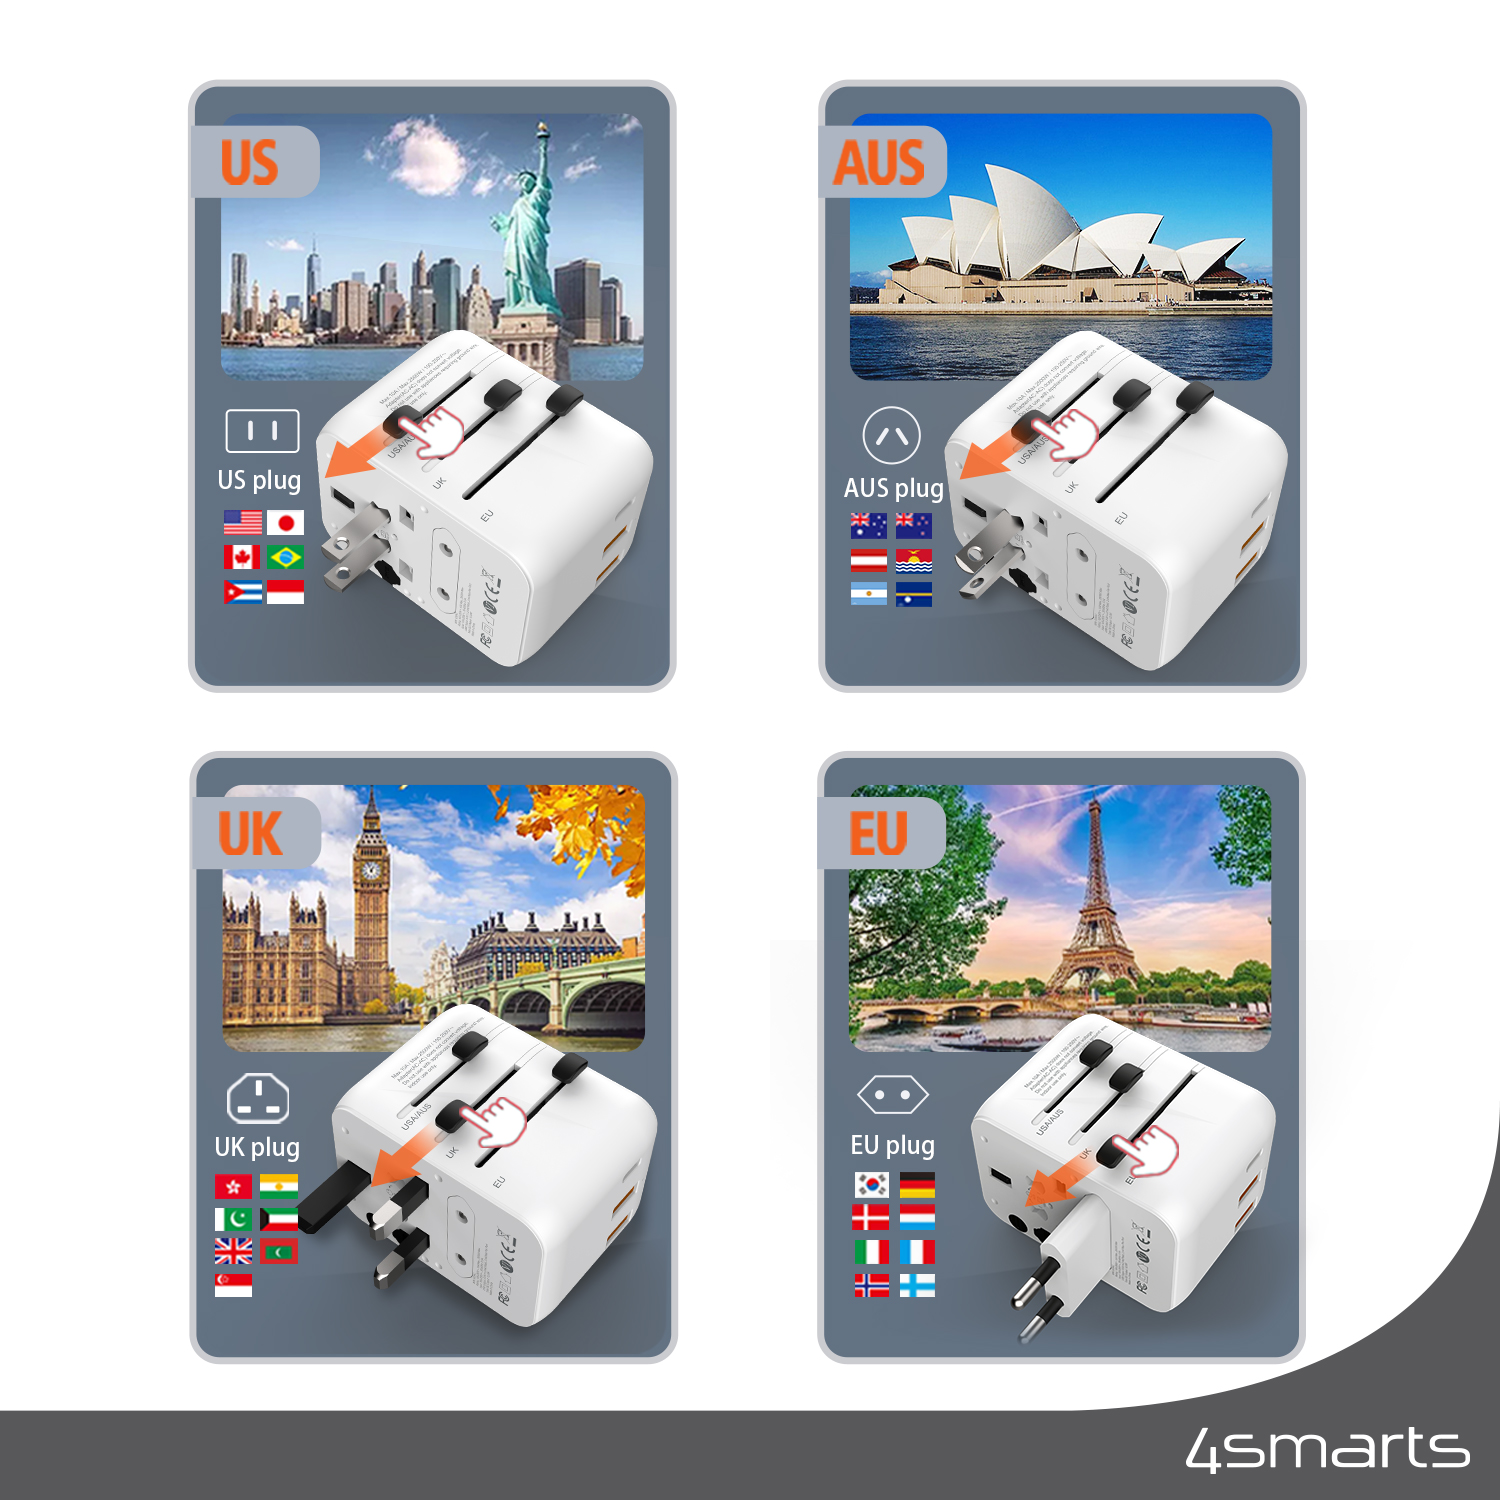 Der 4smarts Universal Reiseadapter Nomad 20W bietet die ideale Lösung für Reisende weltweit - ob du in Europa, den USA, Australien, Großbritannien oder Japan unterwegs bist, dieser Adapter ist immer die richtige Wahl für deine Geräte.